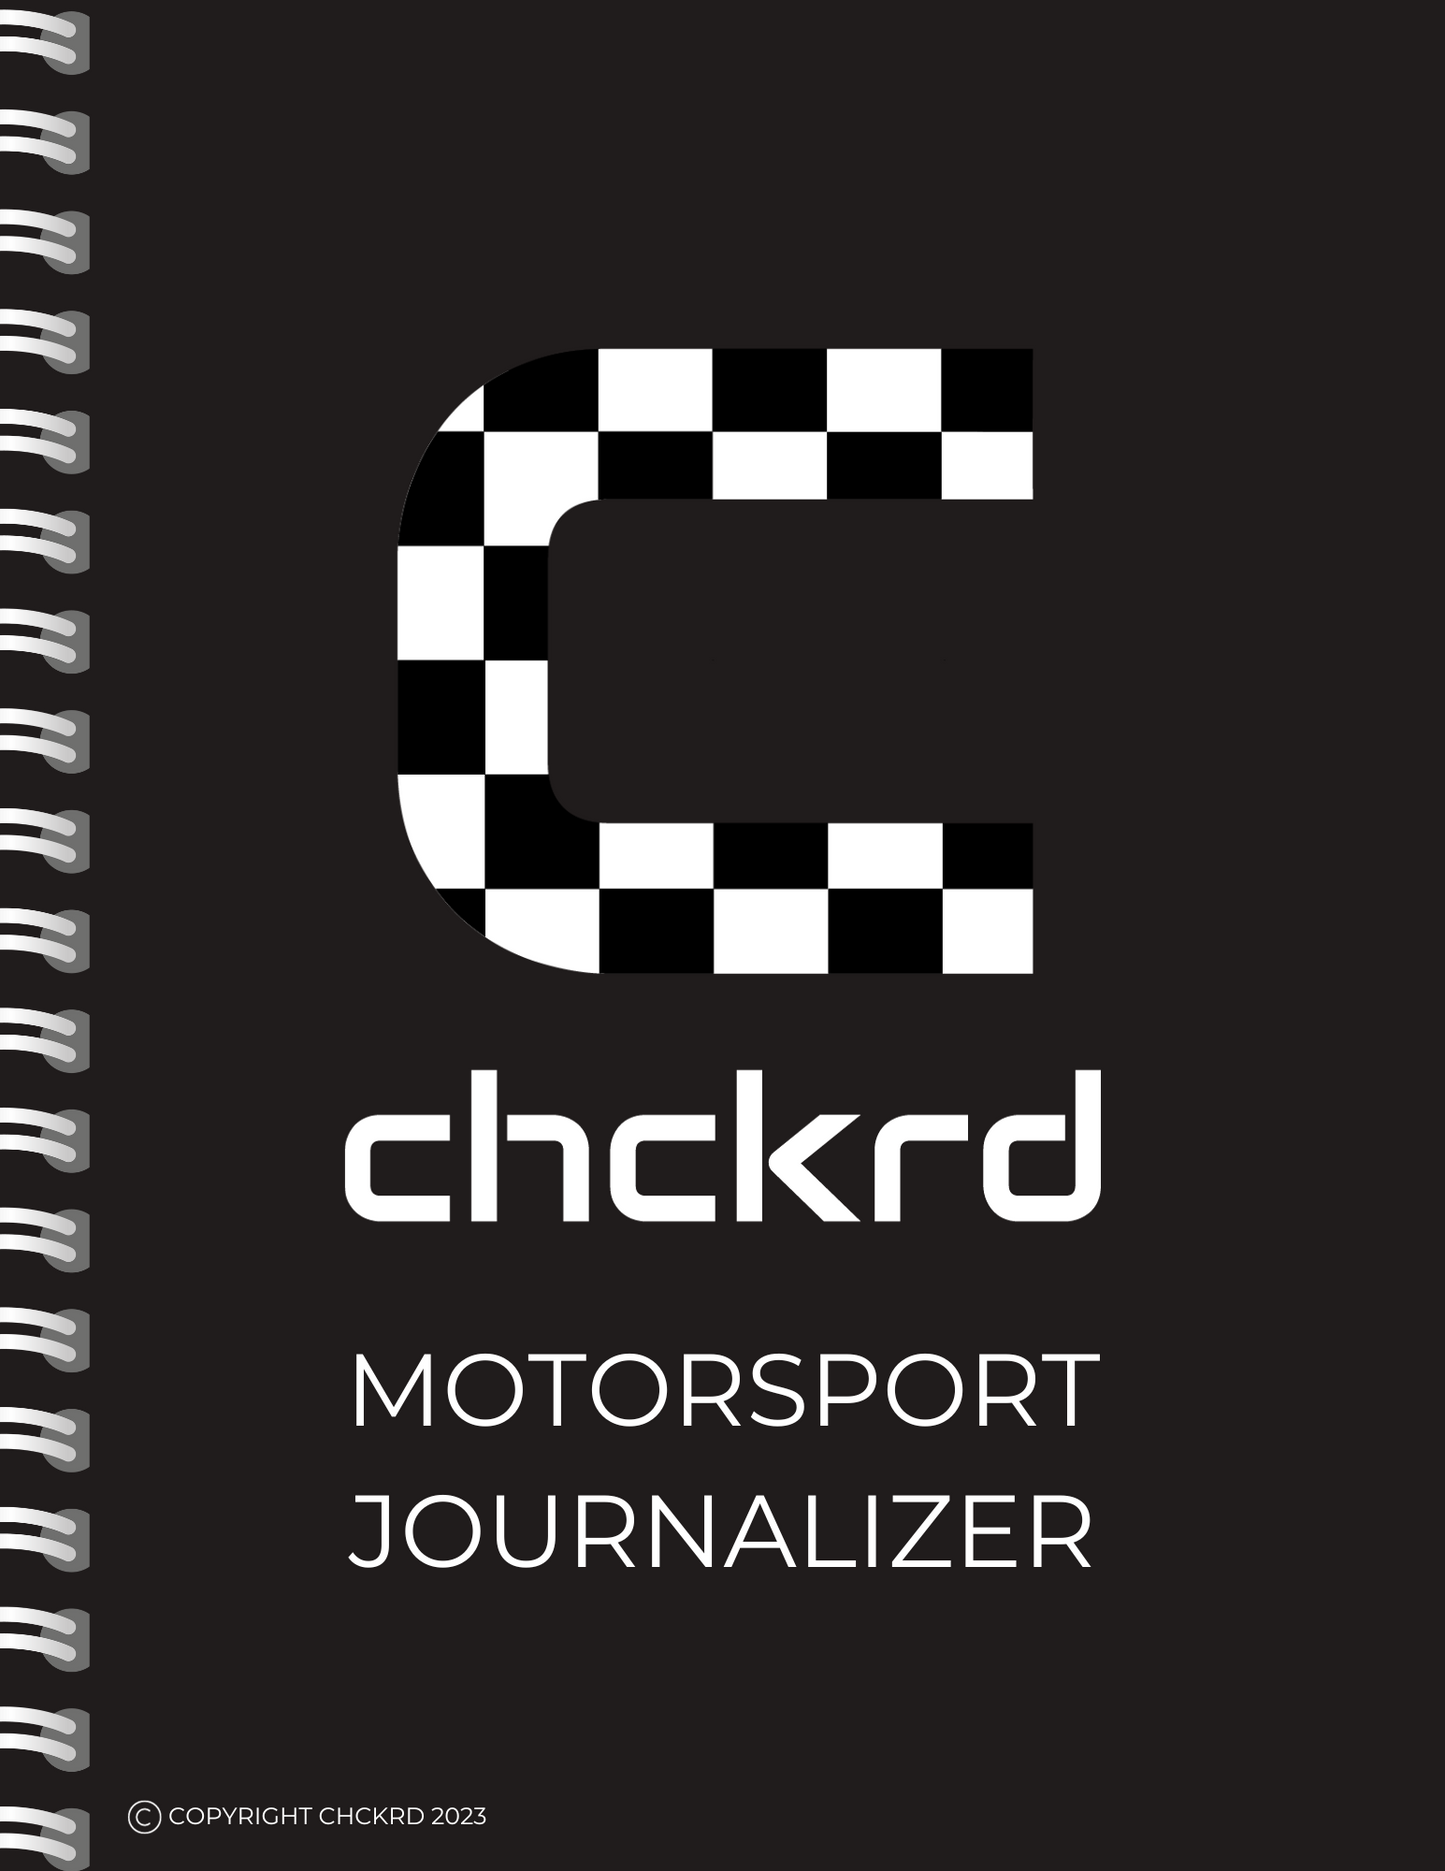 Motorsports Journalizer